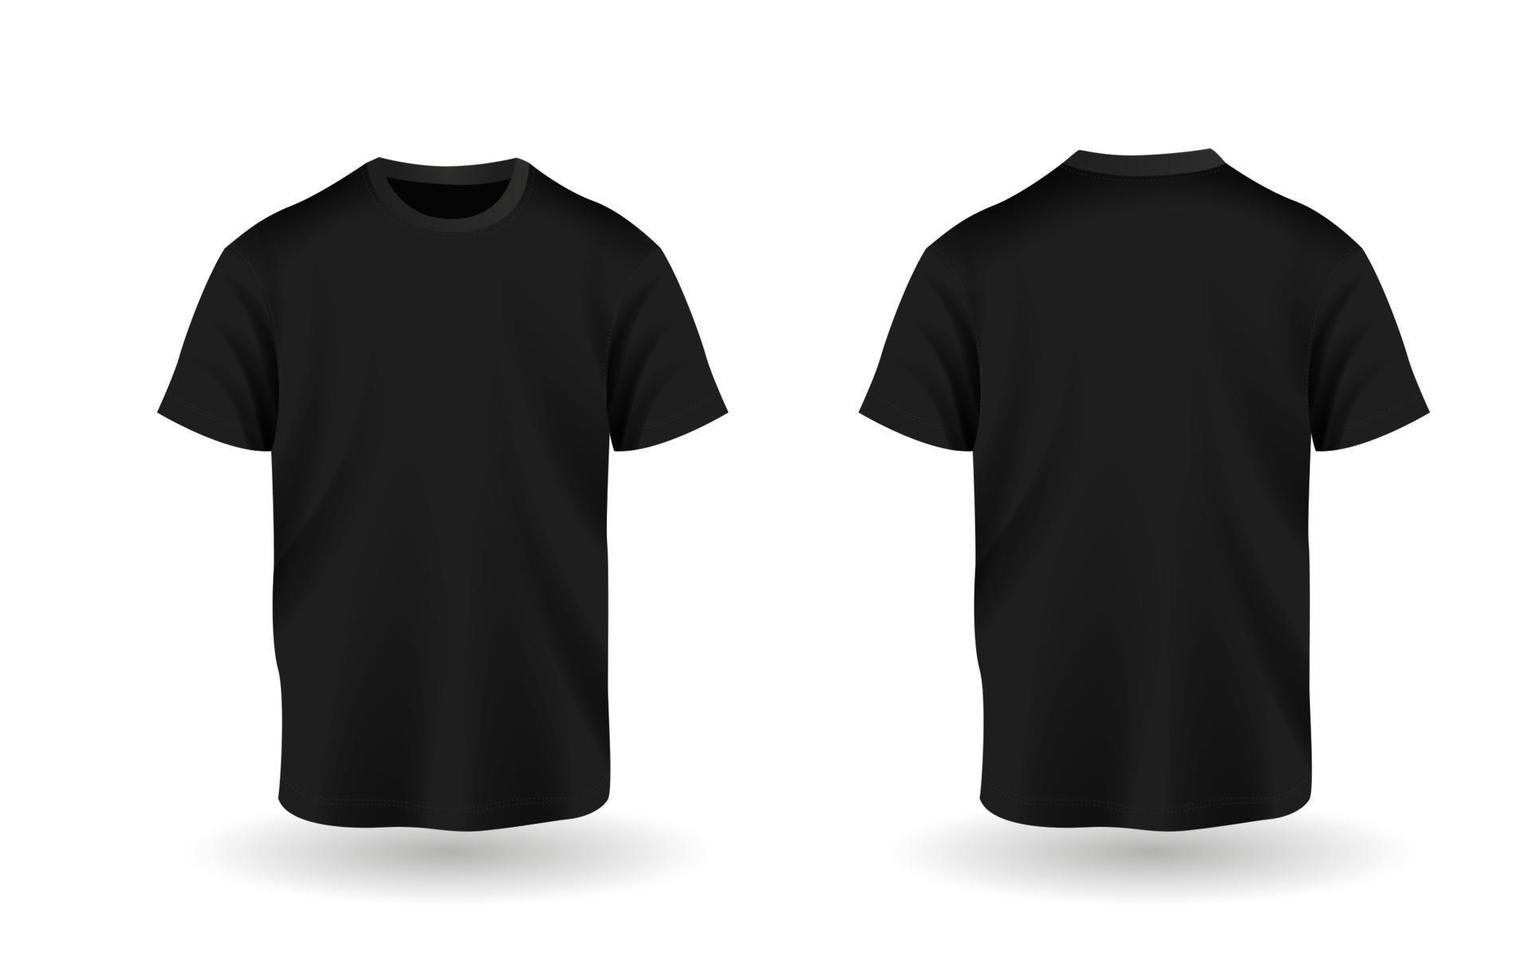 3D Black T-Shirt Mock Up Template 20535877 Vector Art At Vecteezy